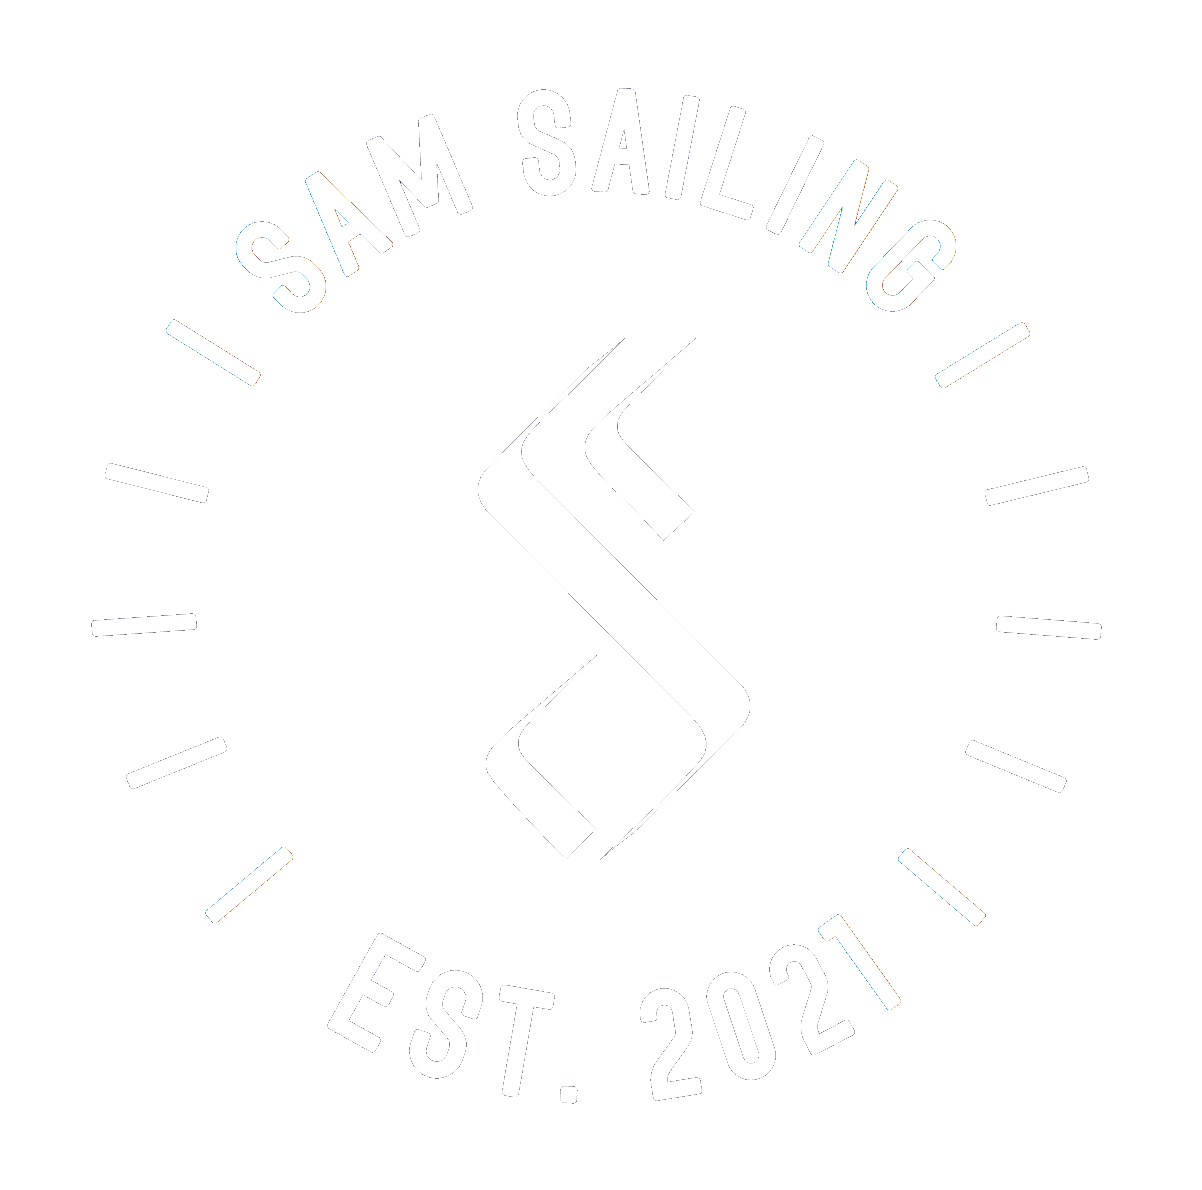 Sam sailing